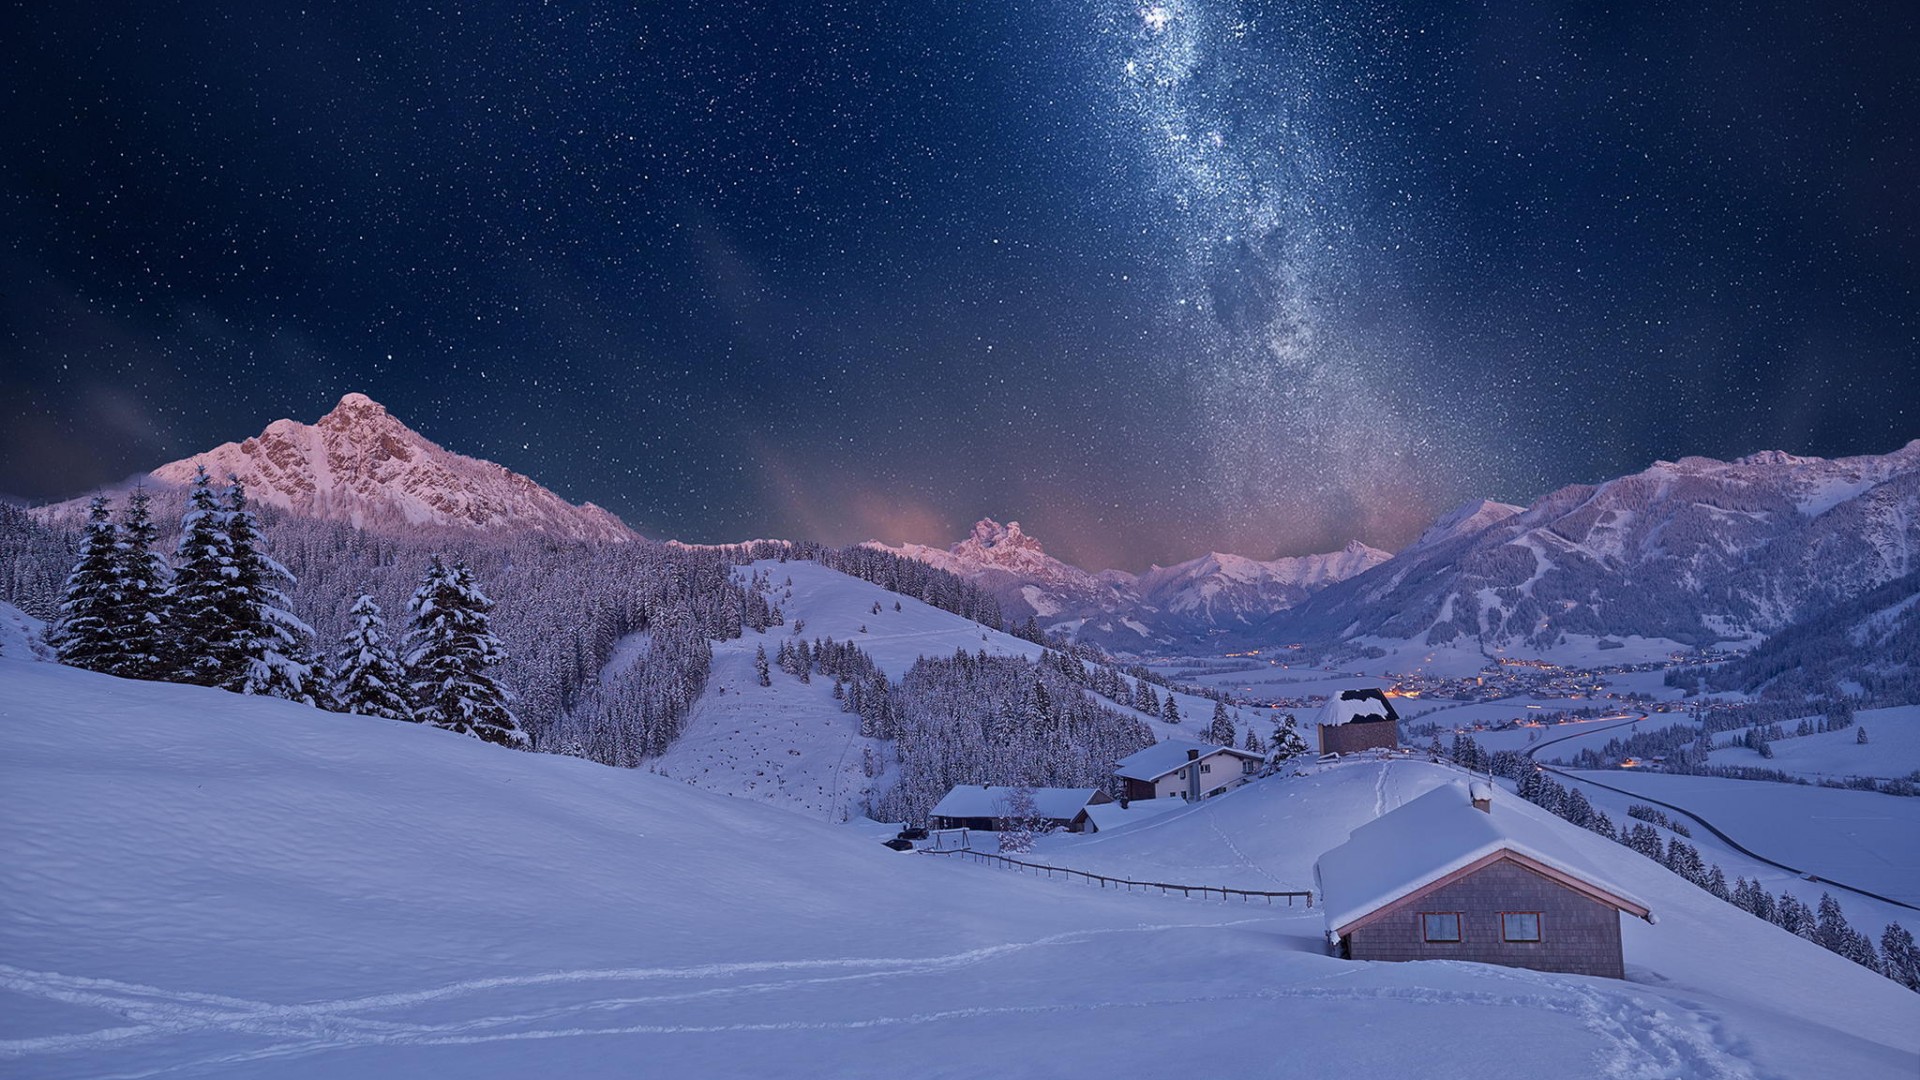 冬天,雪,晚上,山,房子,风景桌面壁纸